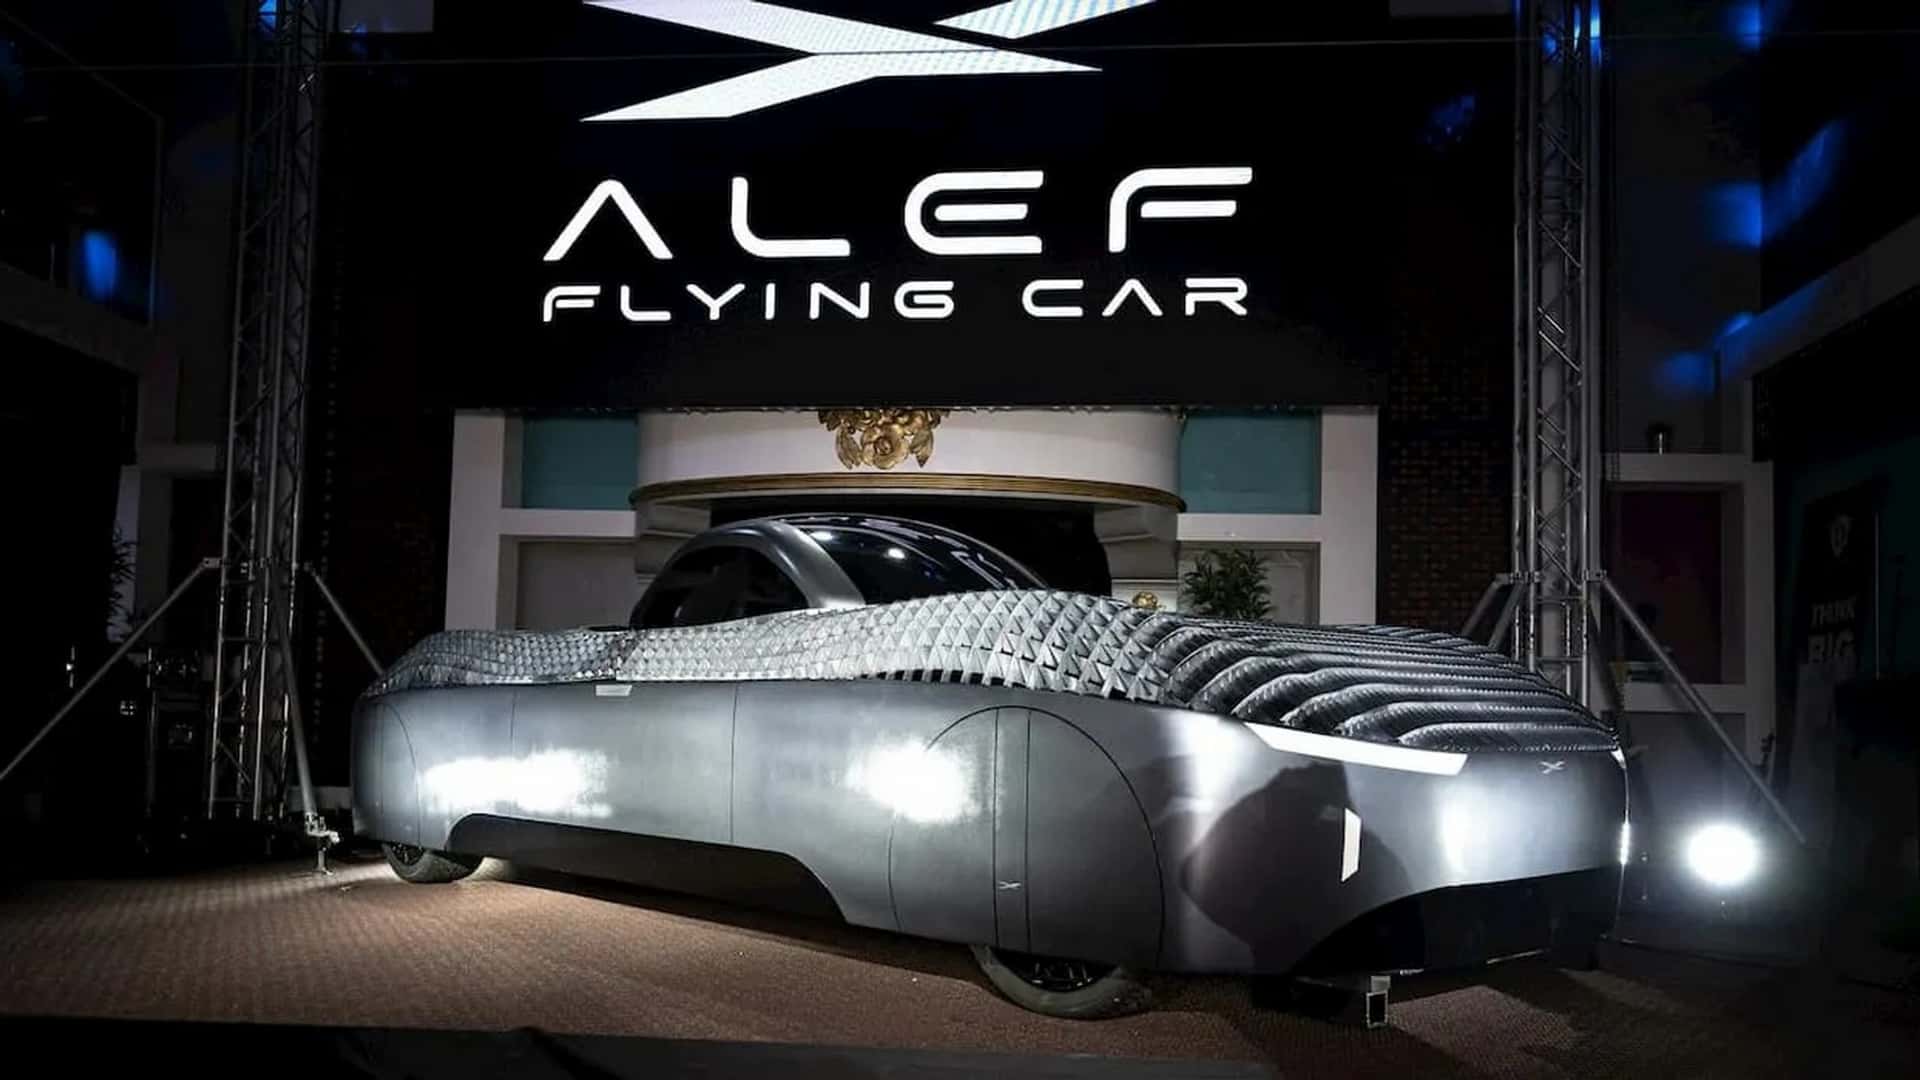 alef flying car racks up 2,500 pre-orders worth $750m